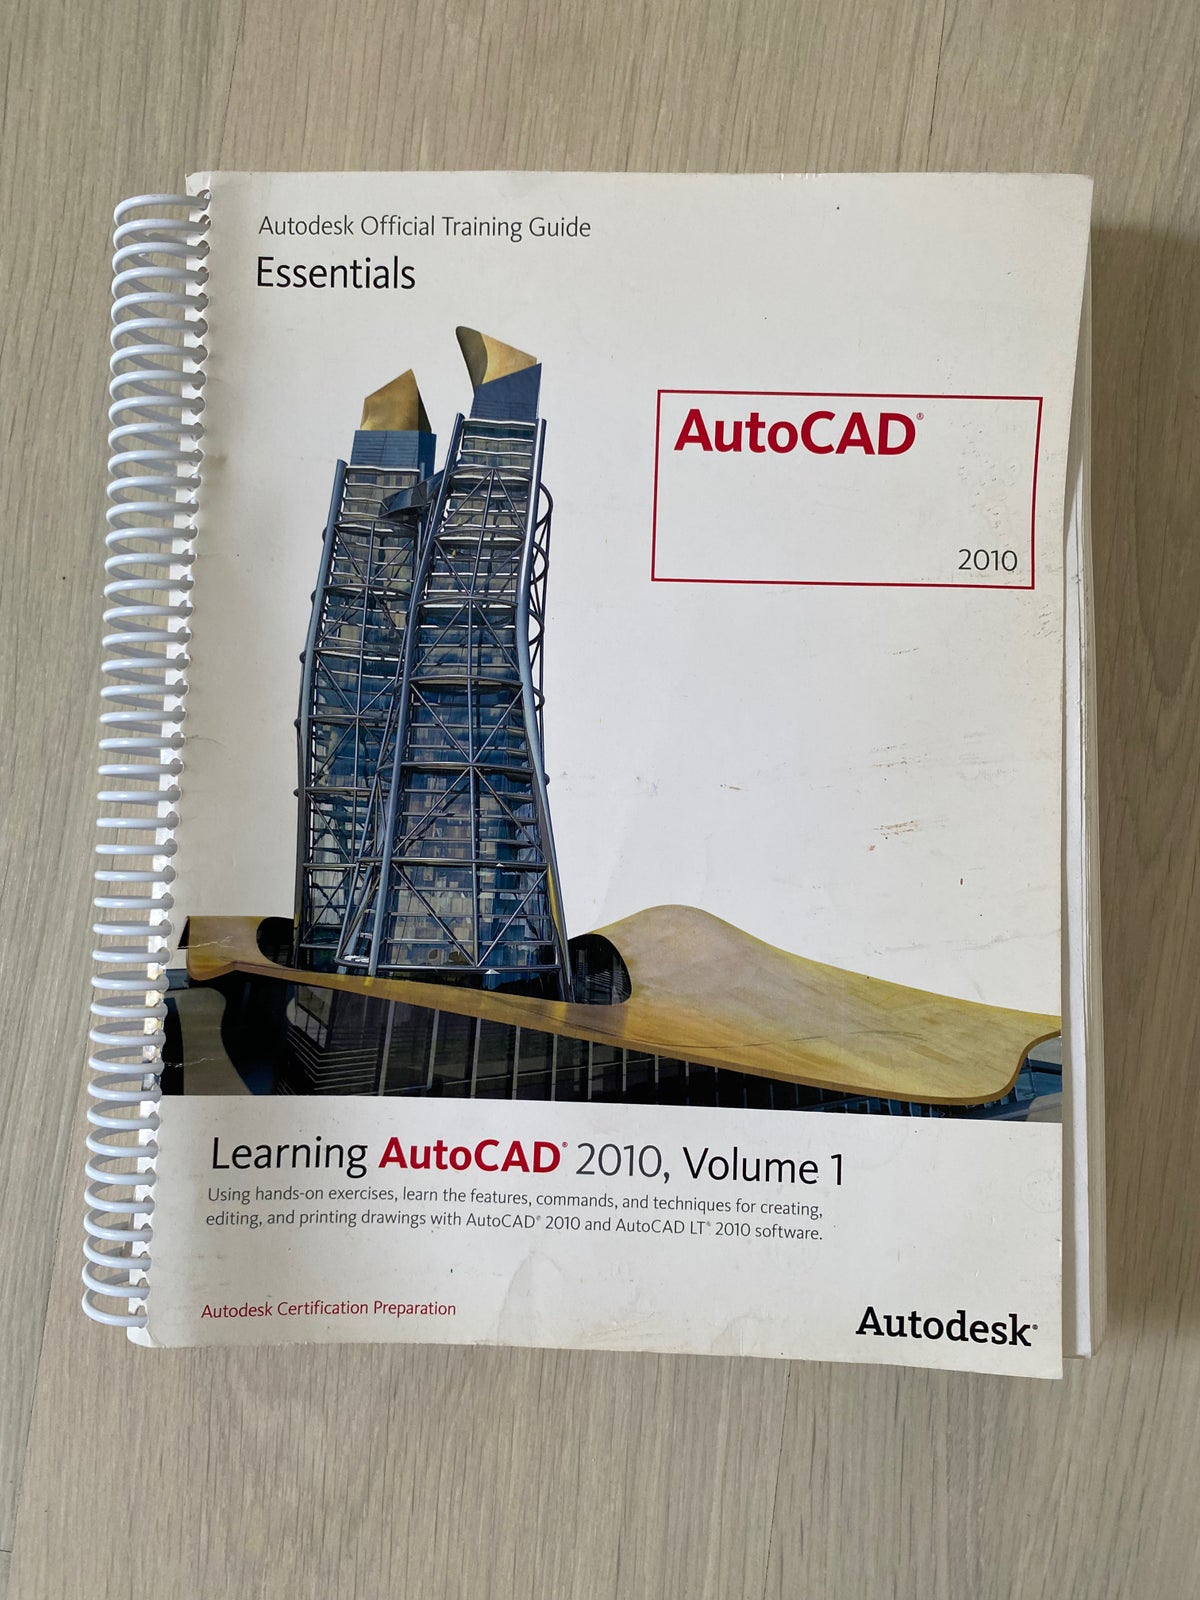 Learning AutoCAD, Autodesk